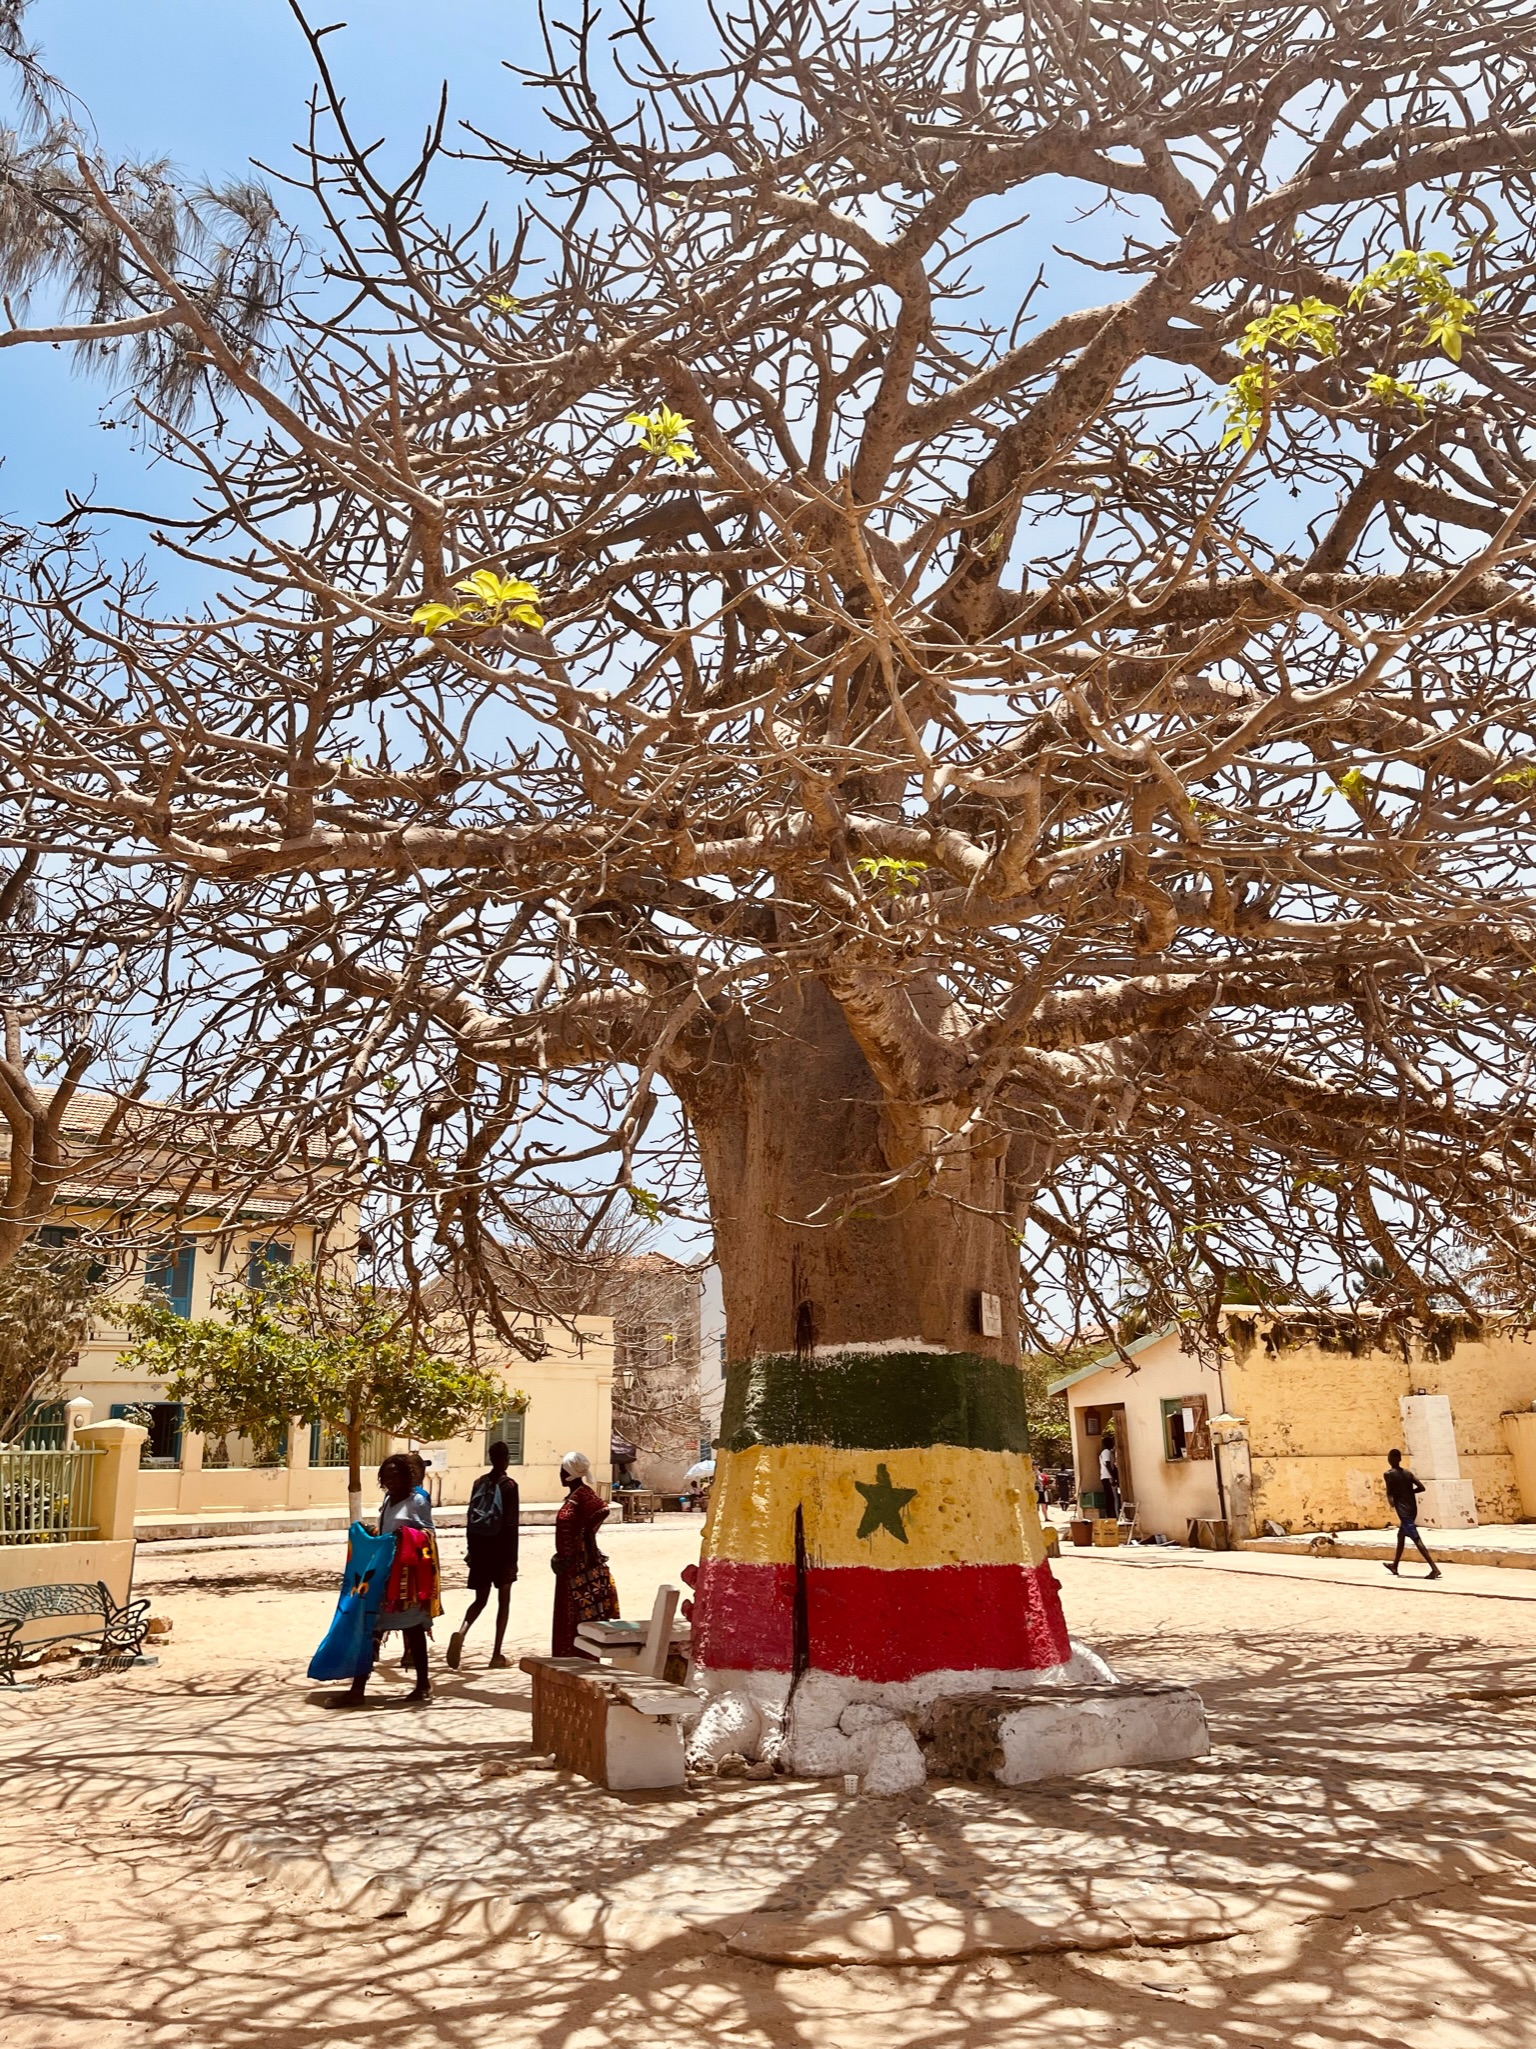 Posvätný strom Baobab, Senegal - Dovolenka s CK Hydrotour